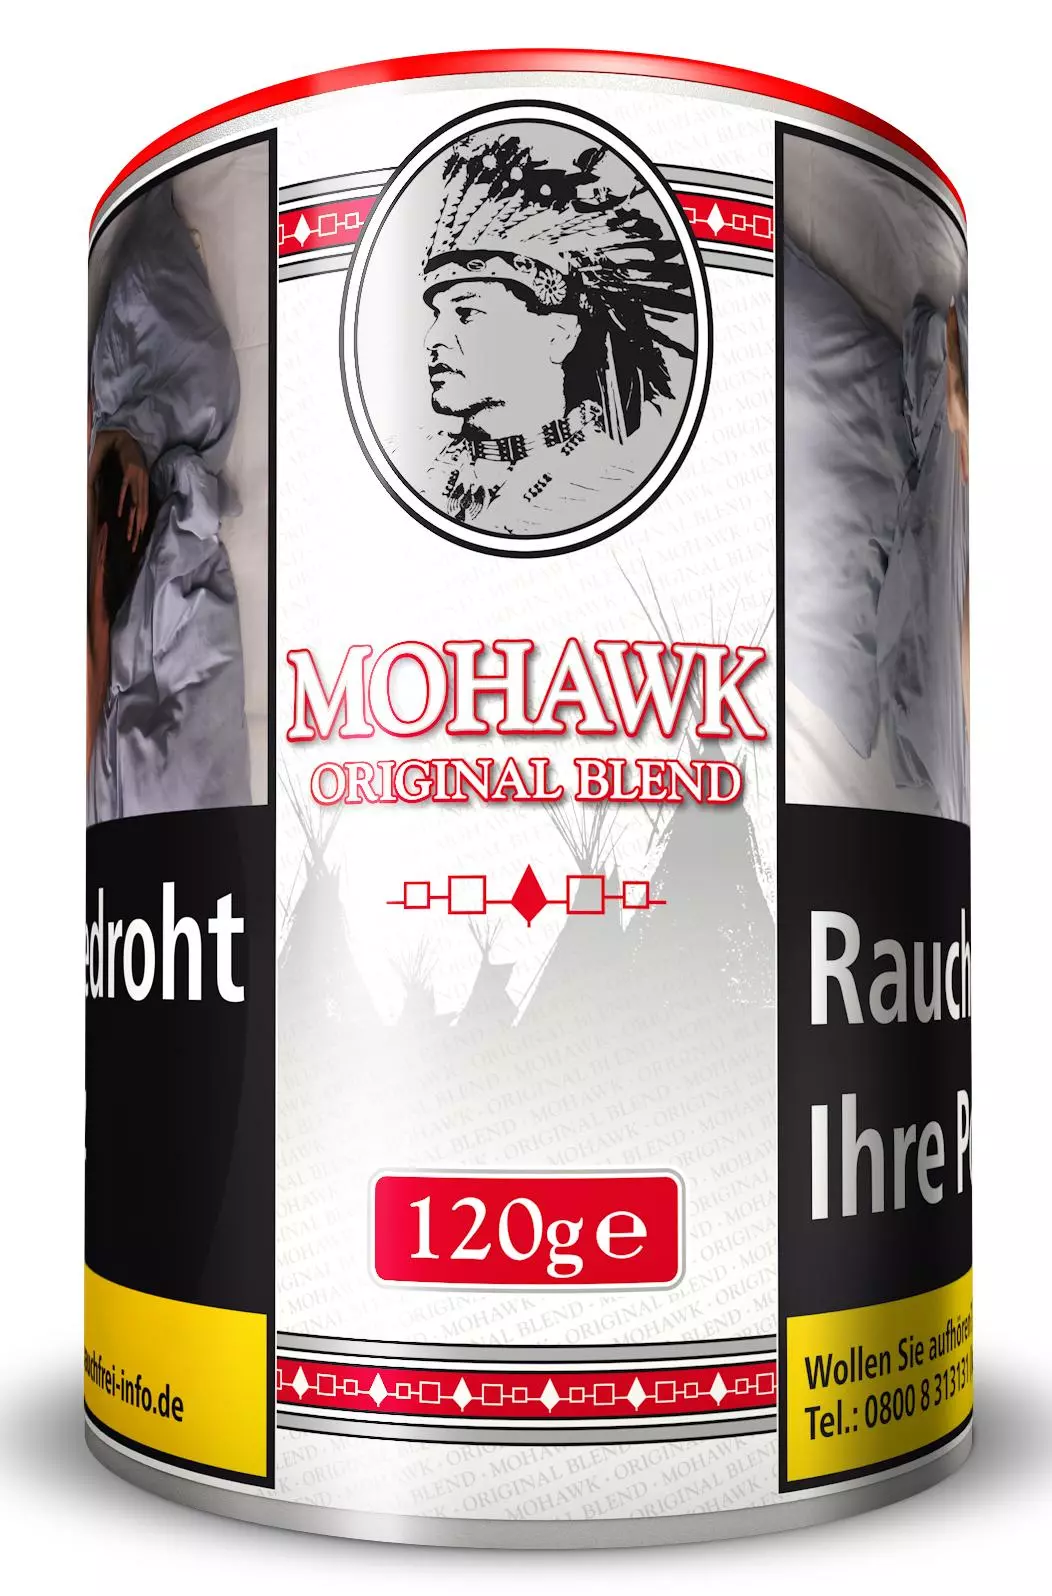 Mohawk Original Blend 1 x 115g Tabak